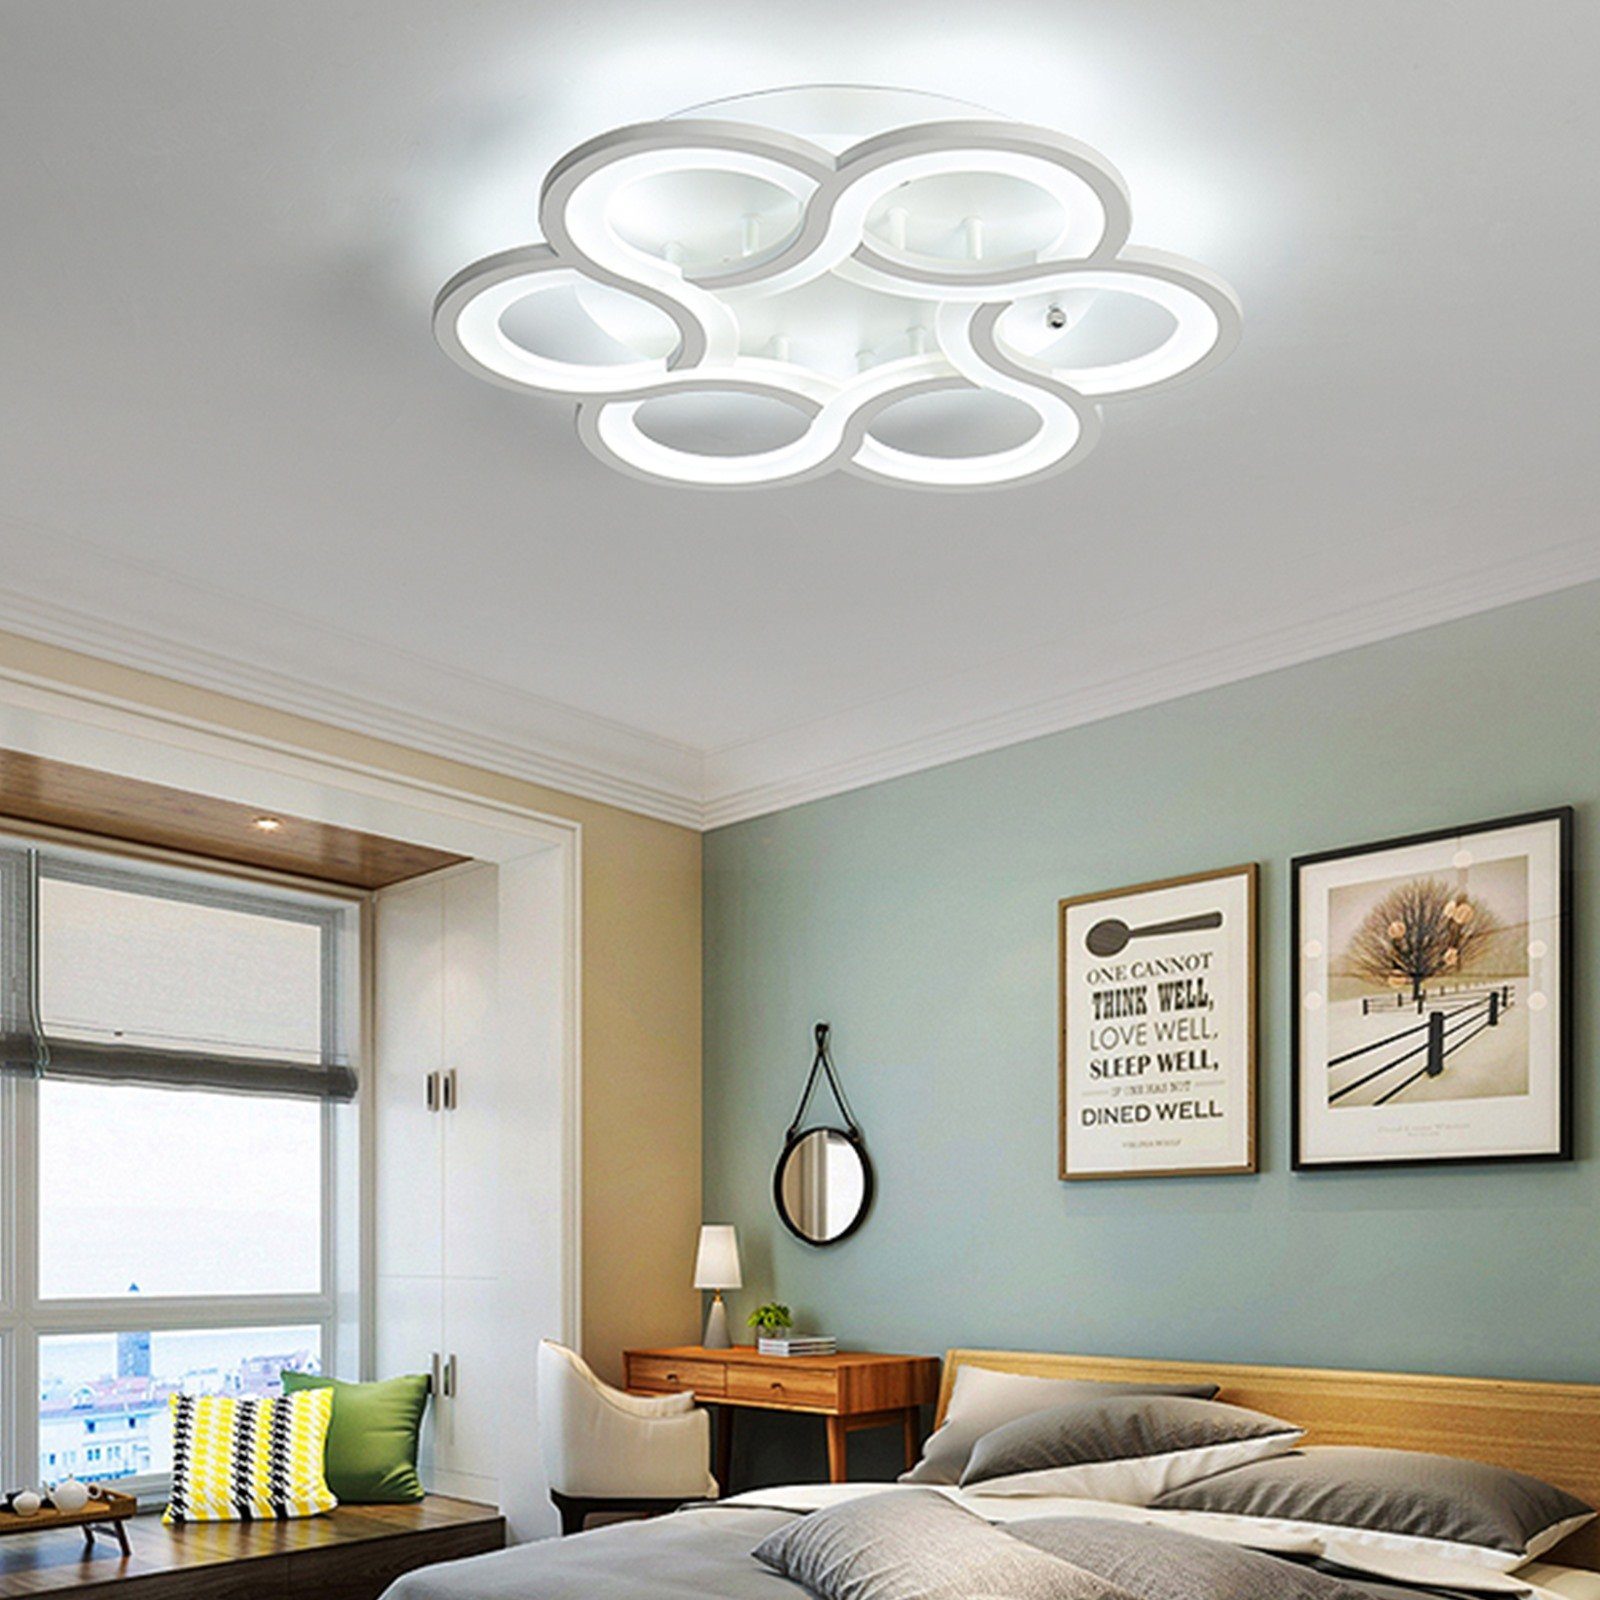 Daskoo Deckenleuchten 43W Dimmbar Deckenlampe Wohnzimmerlampe integriert, Modern Fernbedienung, LED LED Deckenleuchte stufenlos Weiß dimmbar fest Neutralweiß,Warmweiß,Kaltweiß